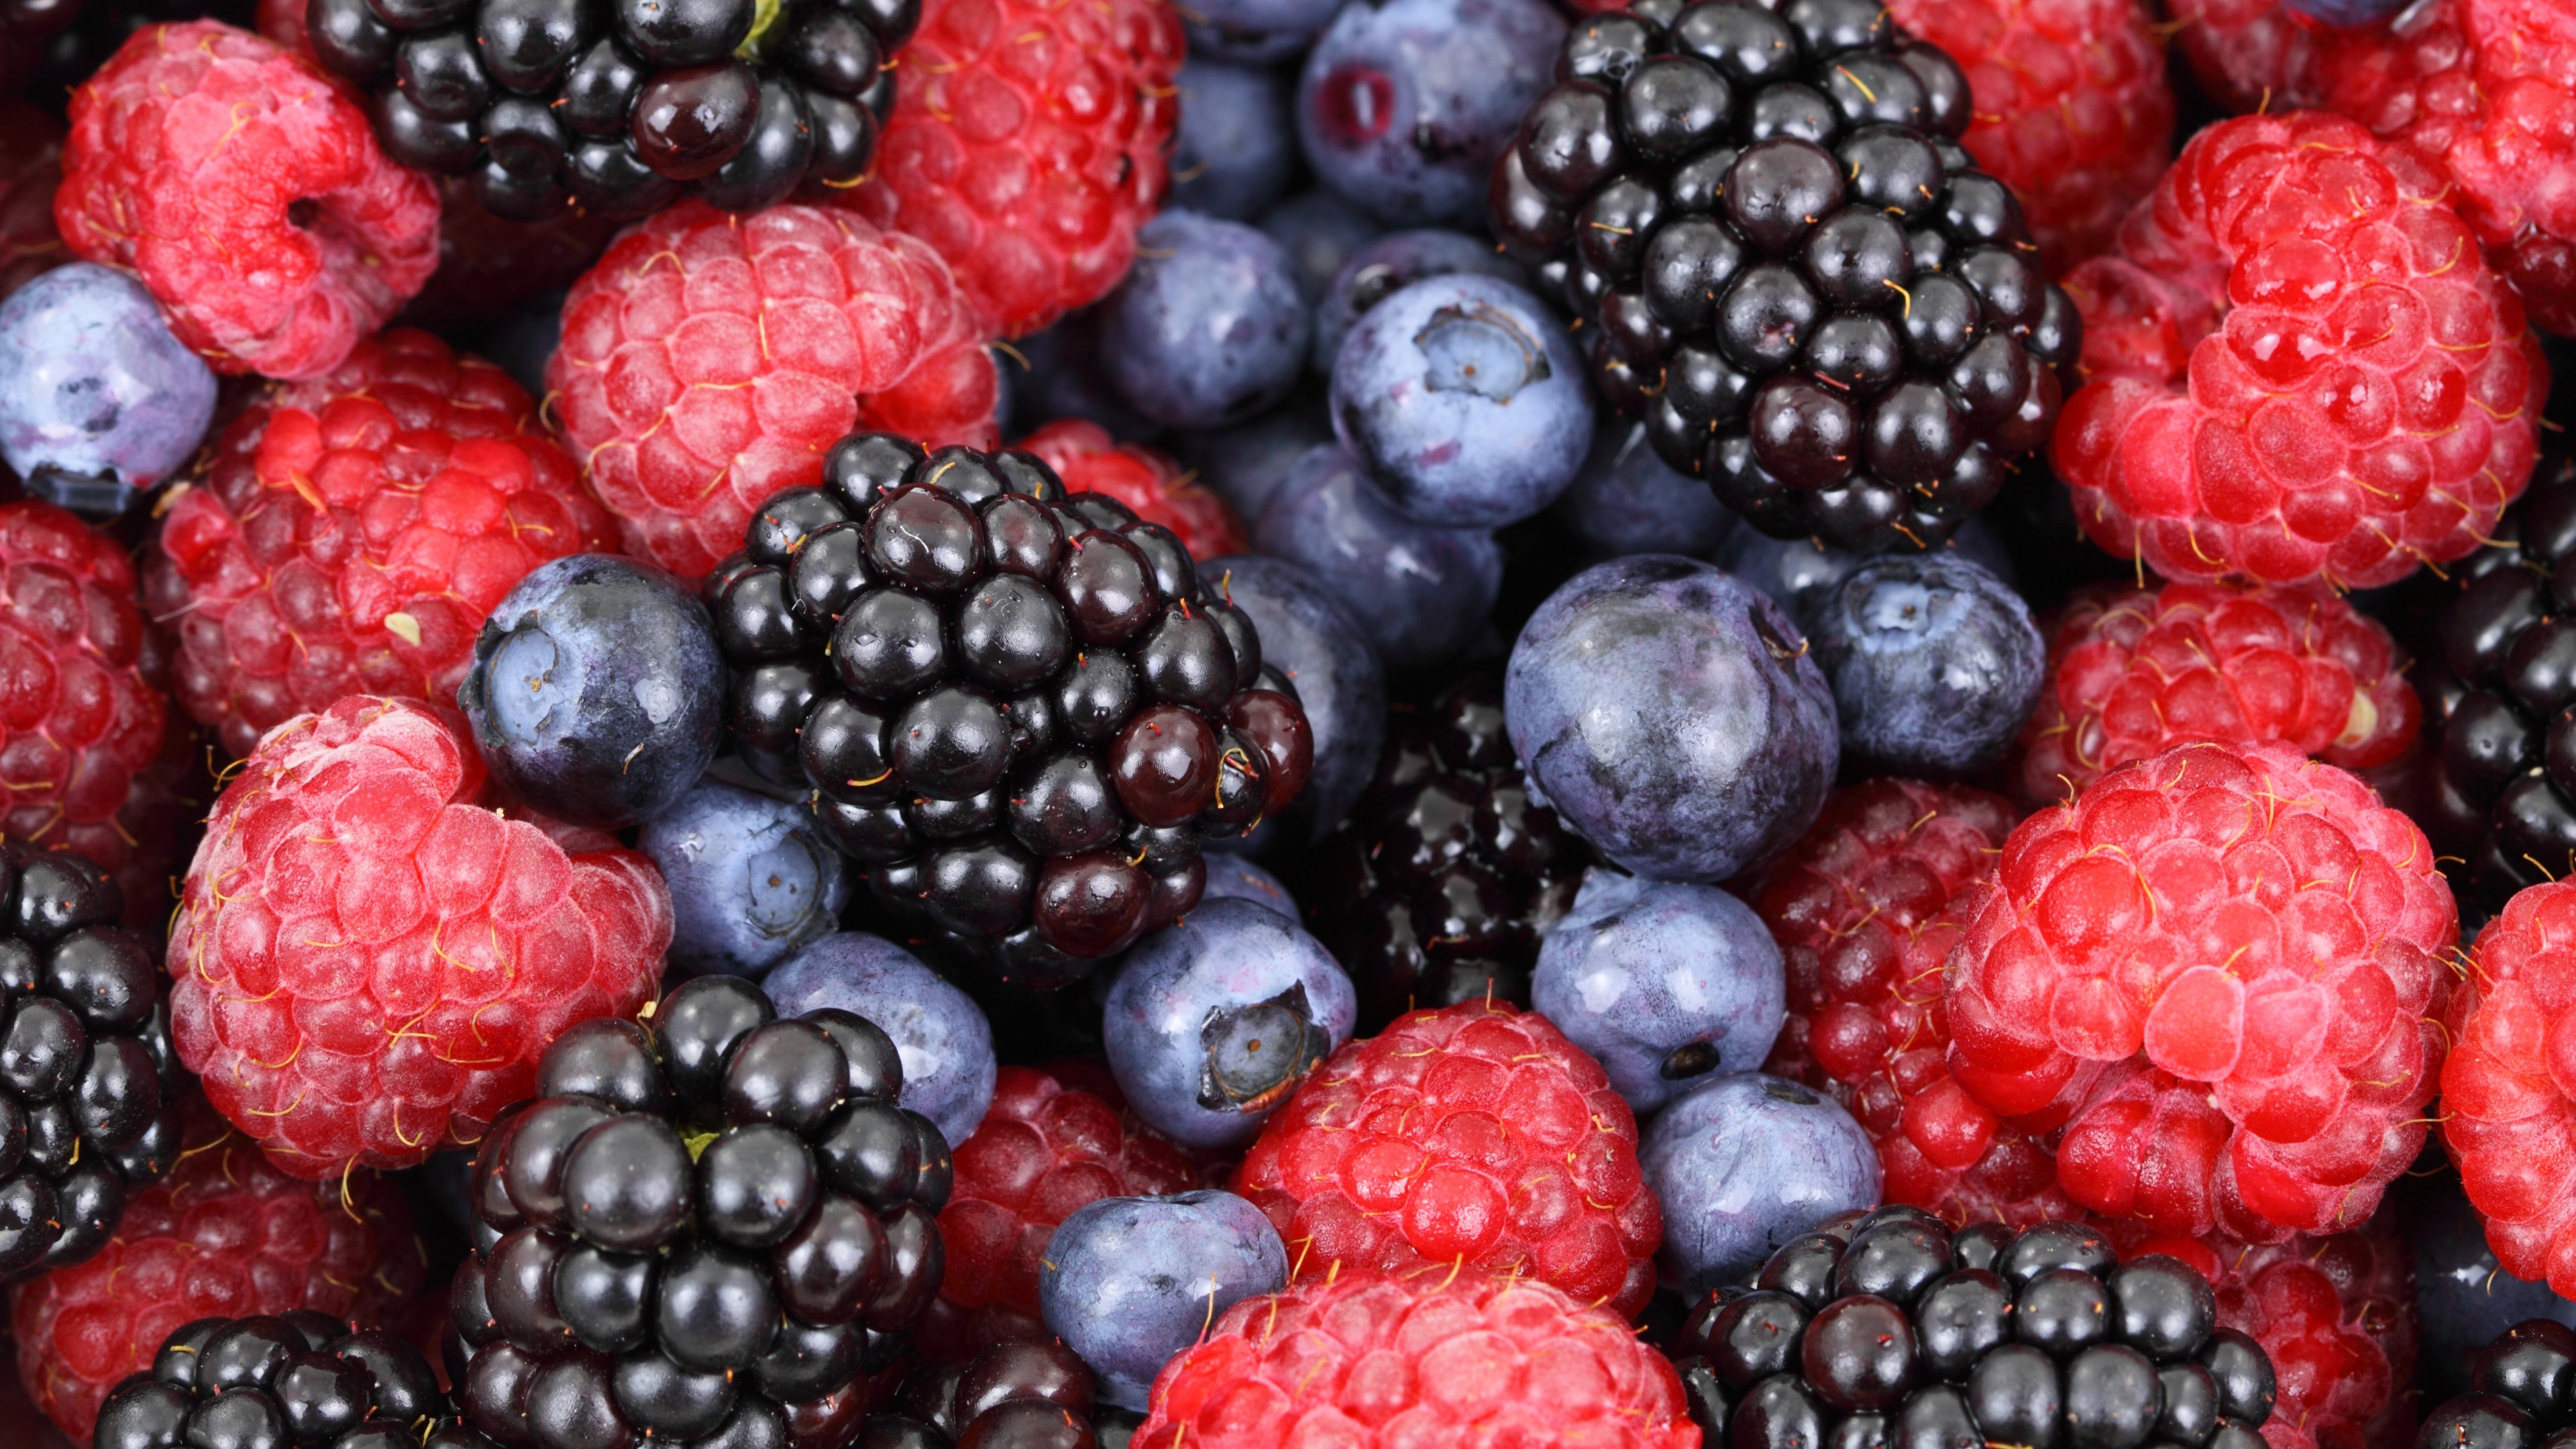 树莓, 天然的食物, 食品, 浆果, 杂货店 壁纸 3840x2160 允许